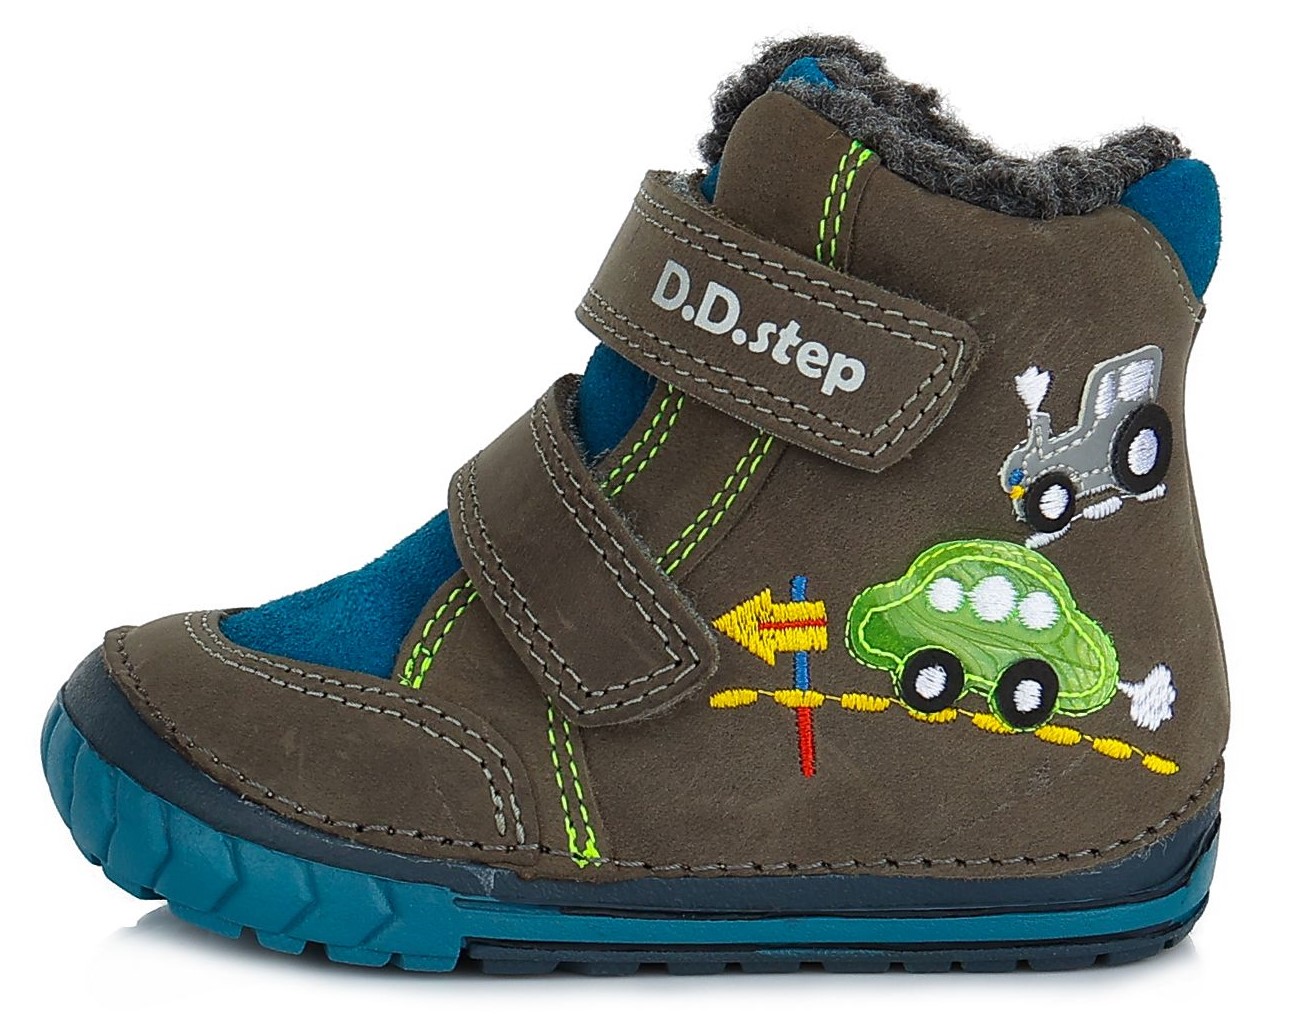 Dětské zimní kotníkové boty D.D.step 029-645B šedé Velikost: 21 (EU)